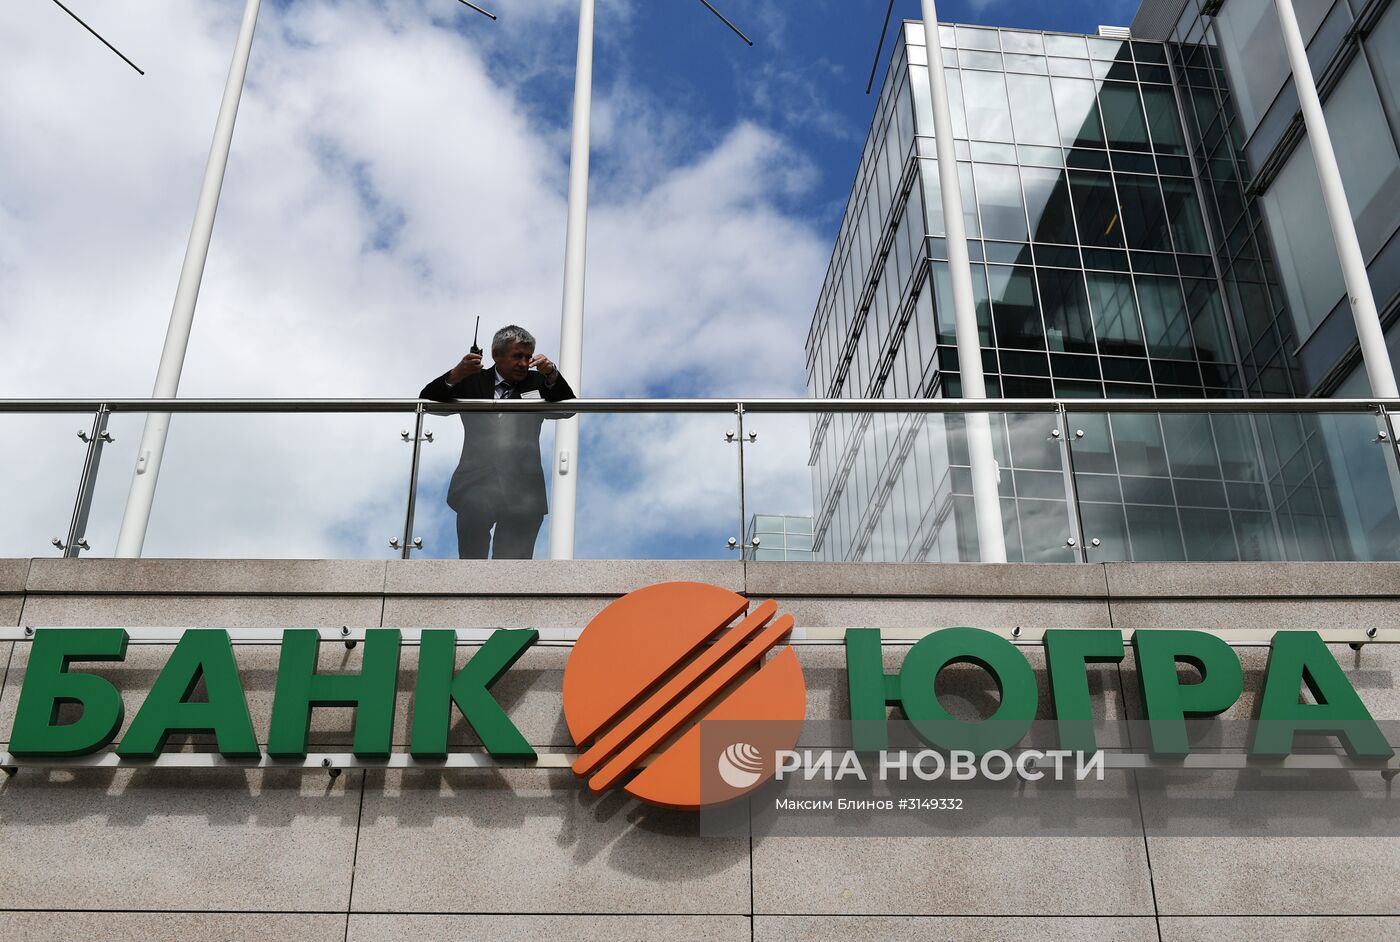 Центробанк ввел временную администрацию в банке "Югра"